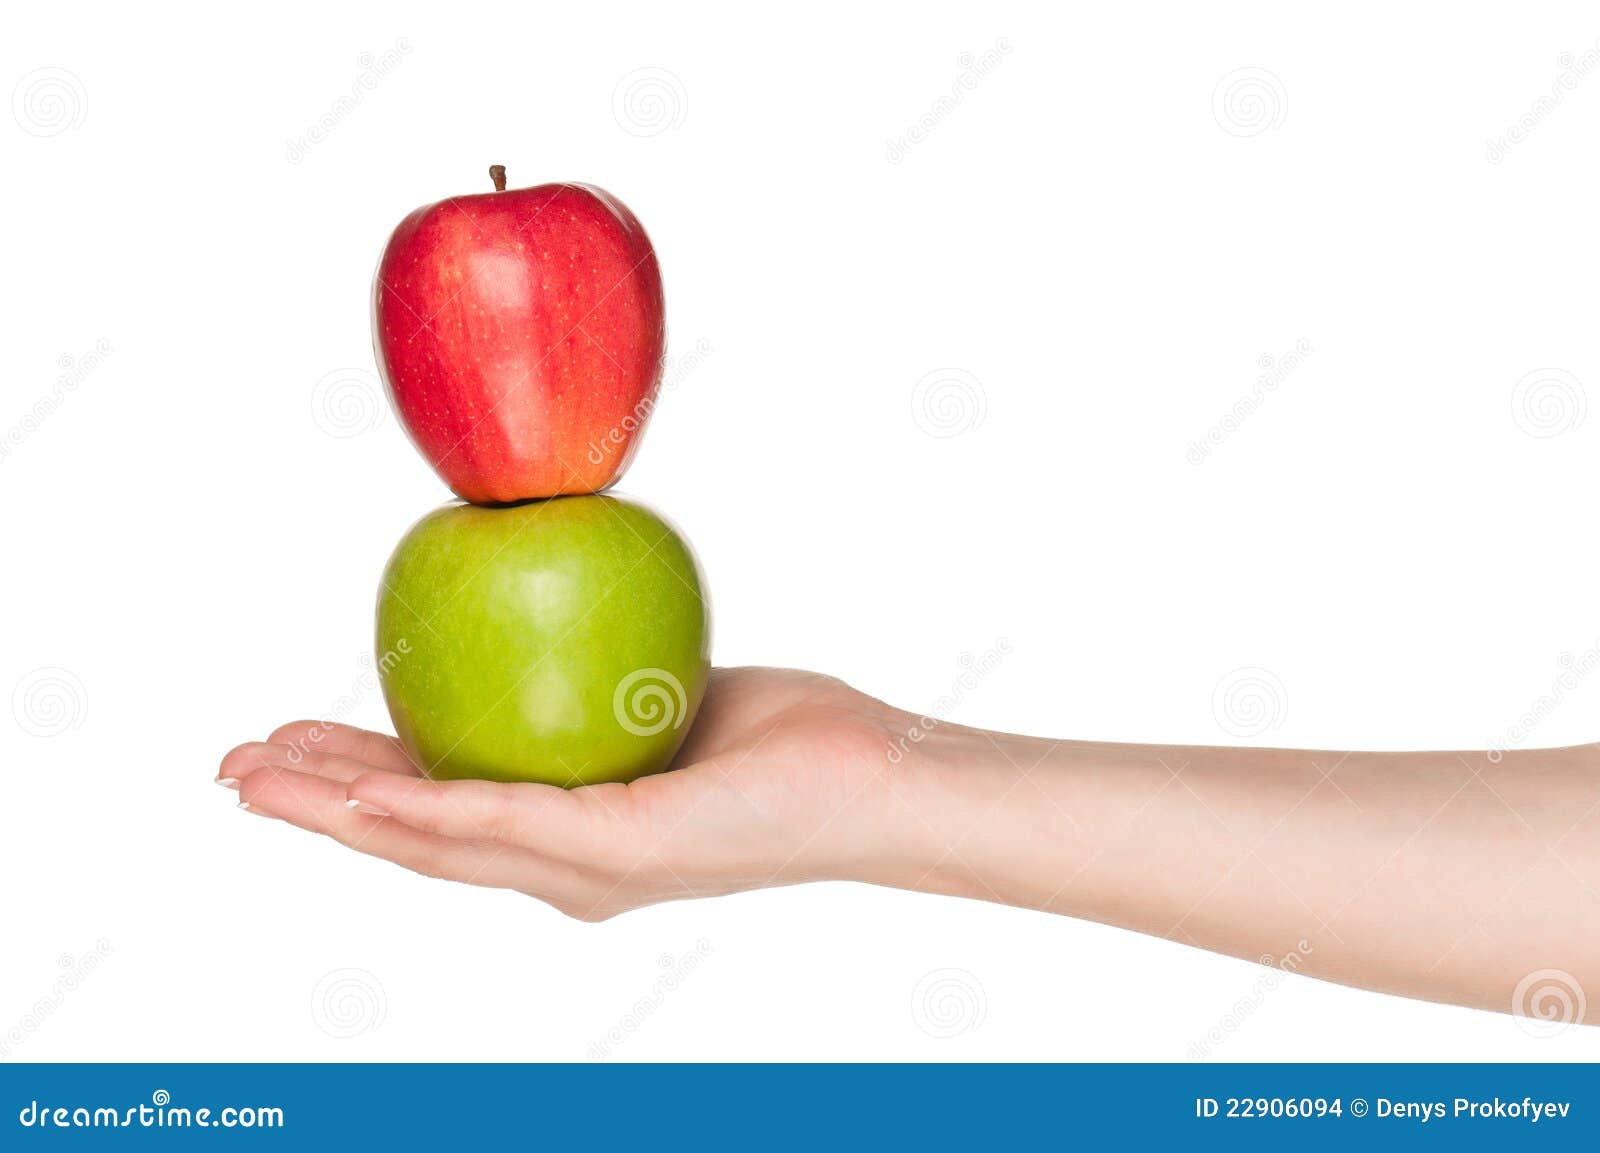 Яблоко на руке без фона